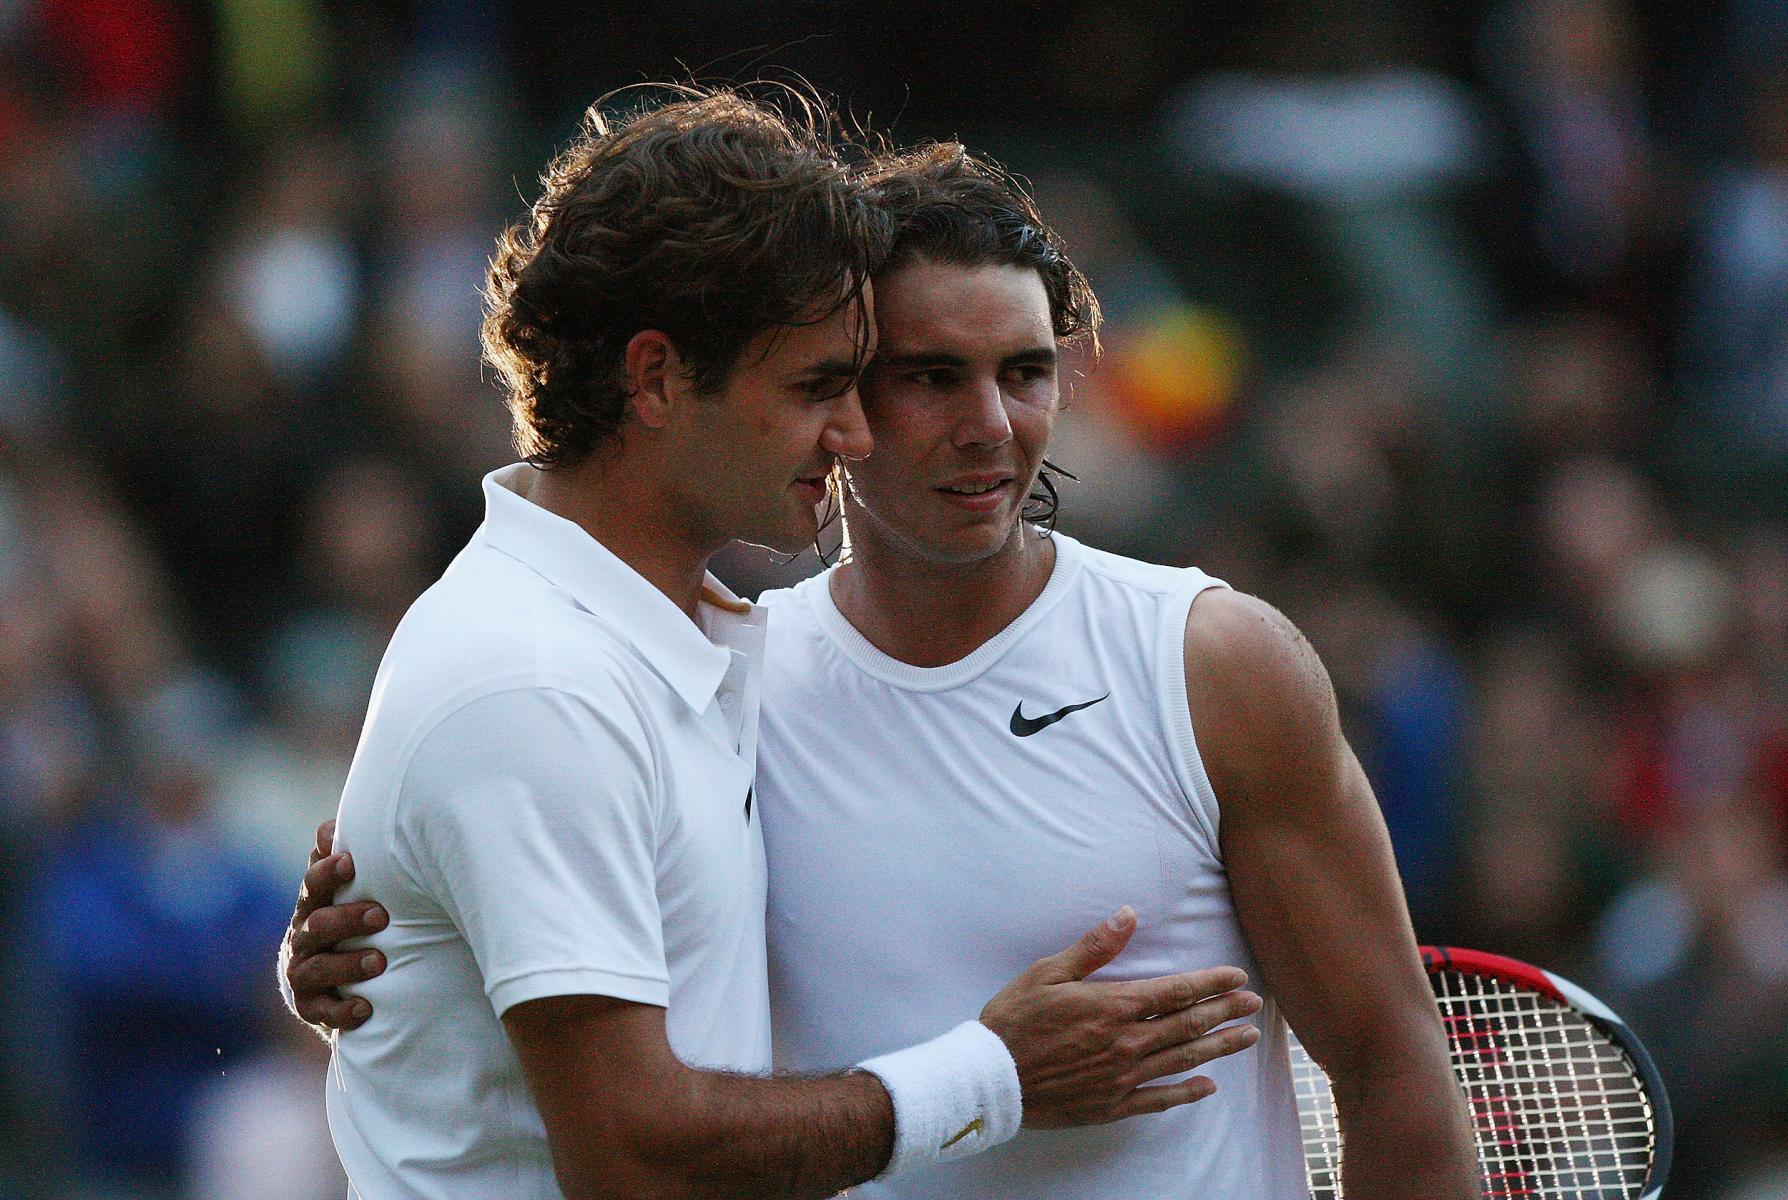 La de Rafa Nadal, Djokovic o Federer? Las raquetas de tenis mejor valoradas